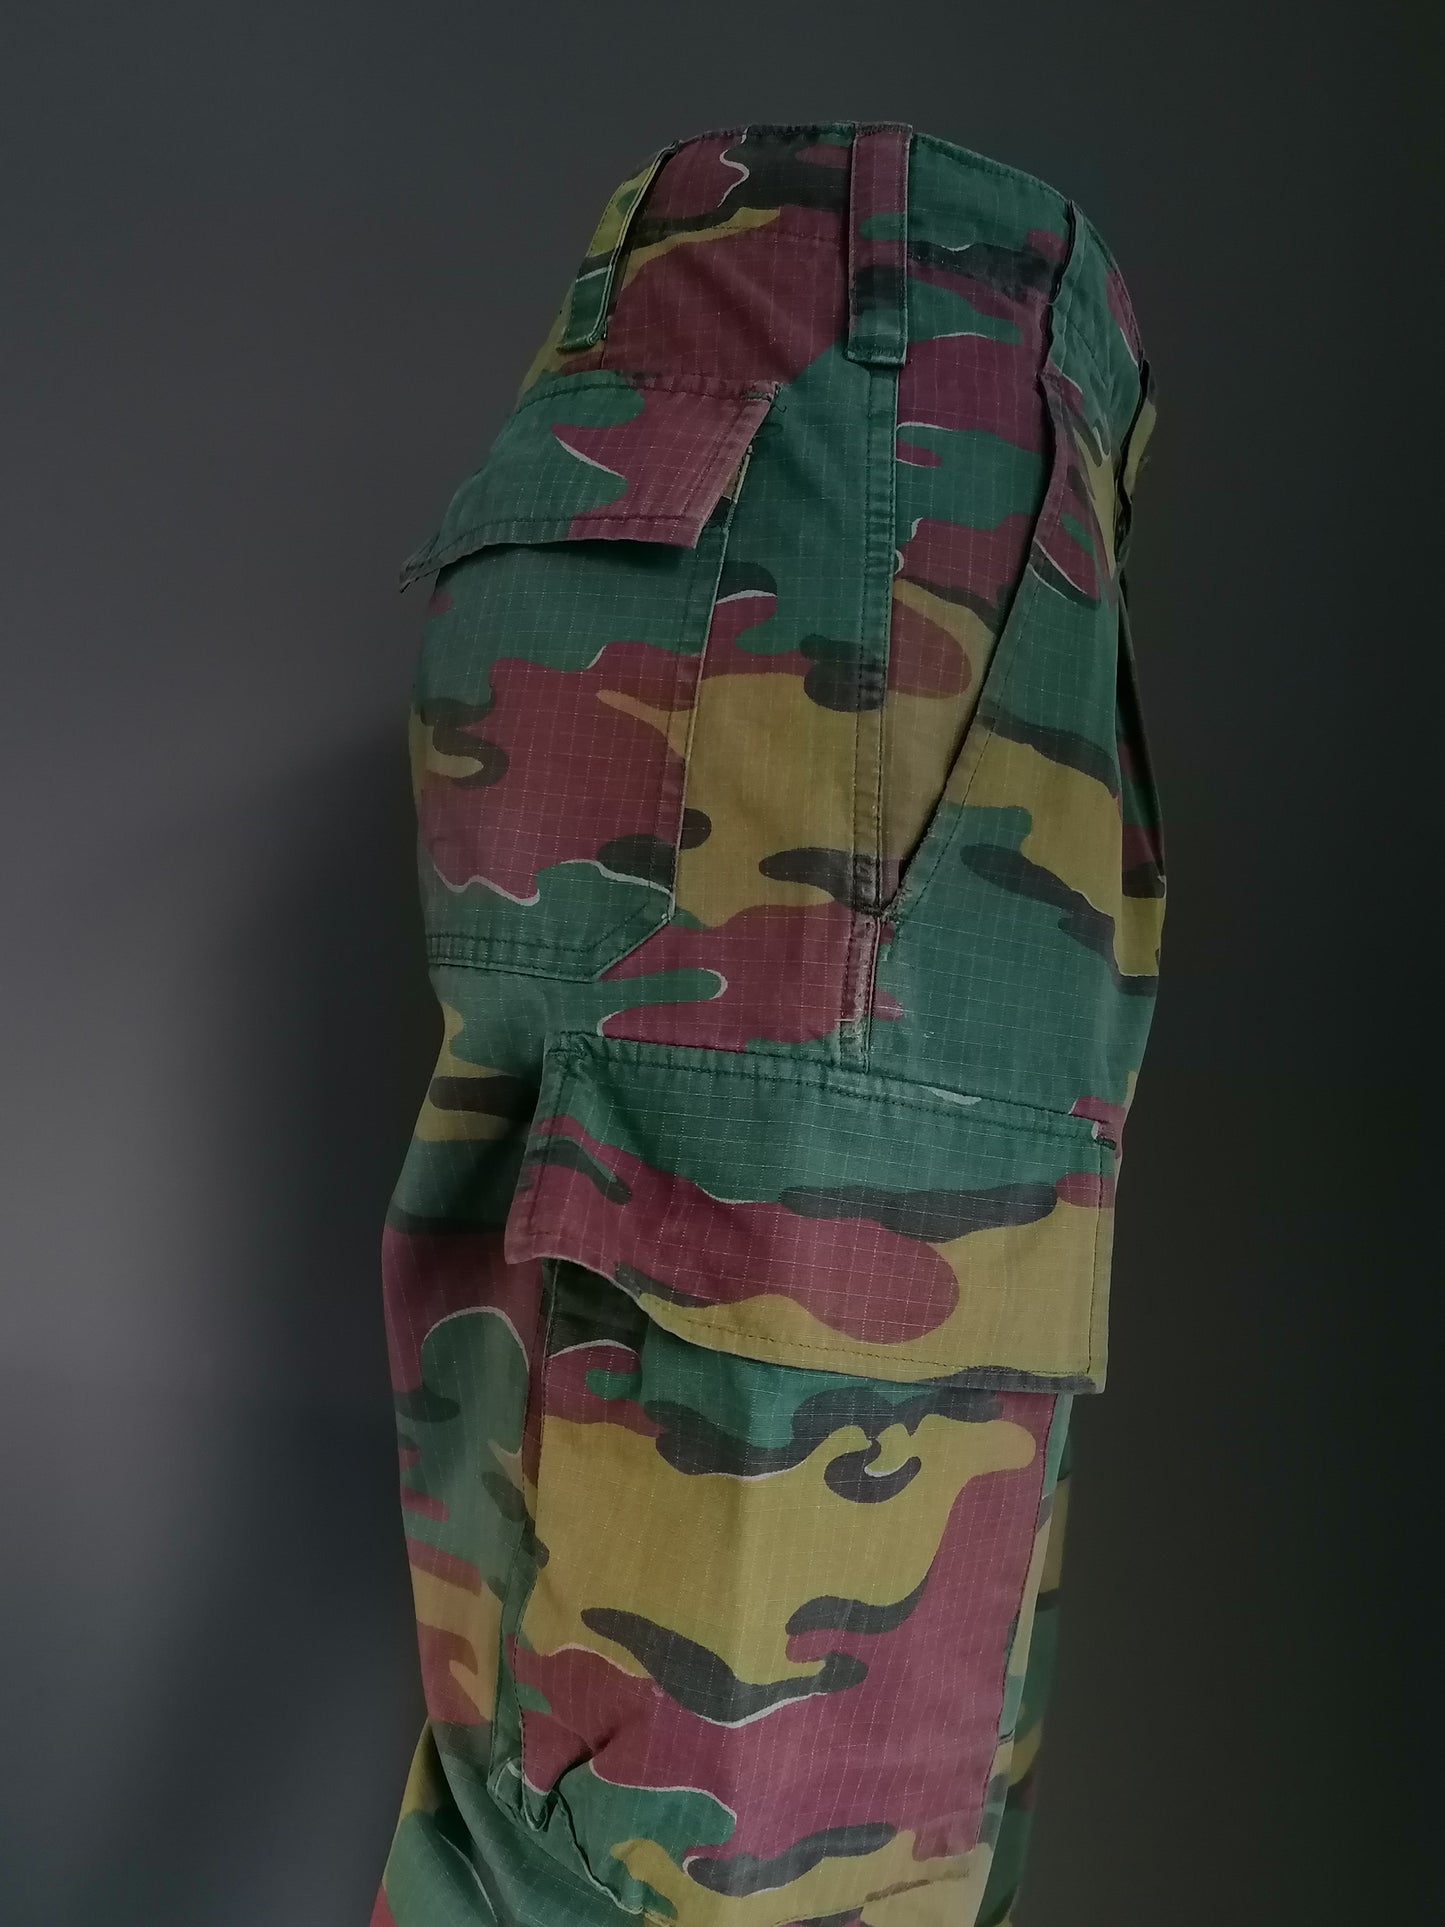 Pantalon d'armée / armée avec boutons. Impression de camouflage vert brun. "2000". Taille M.